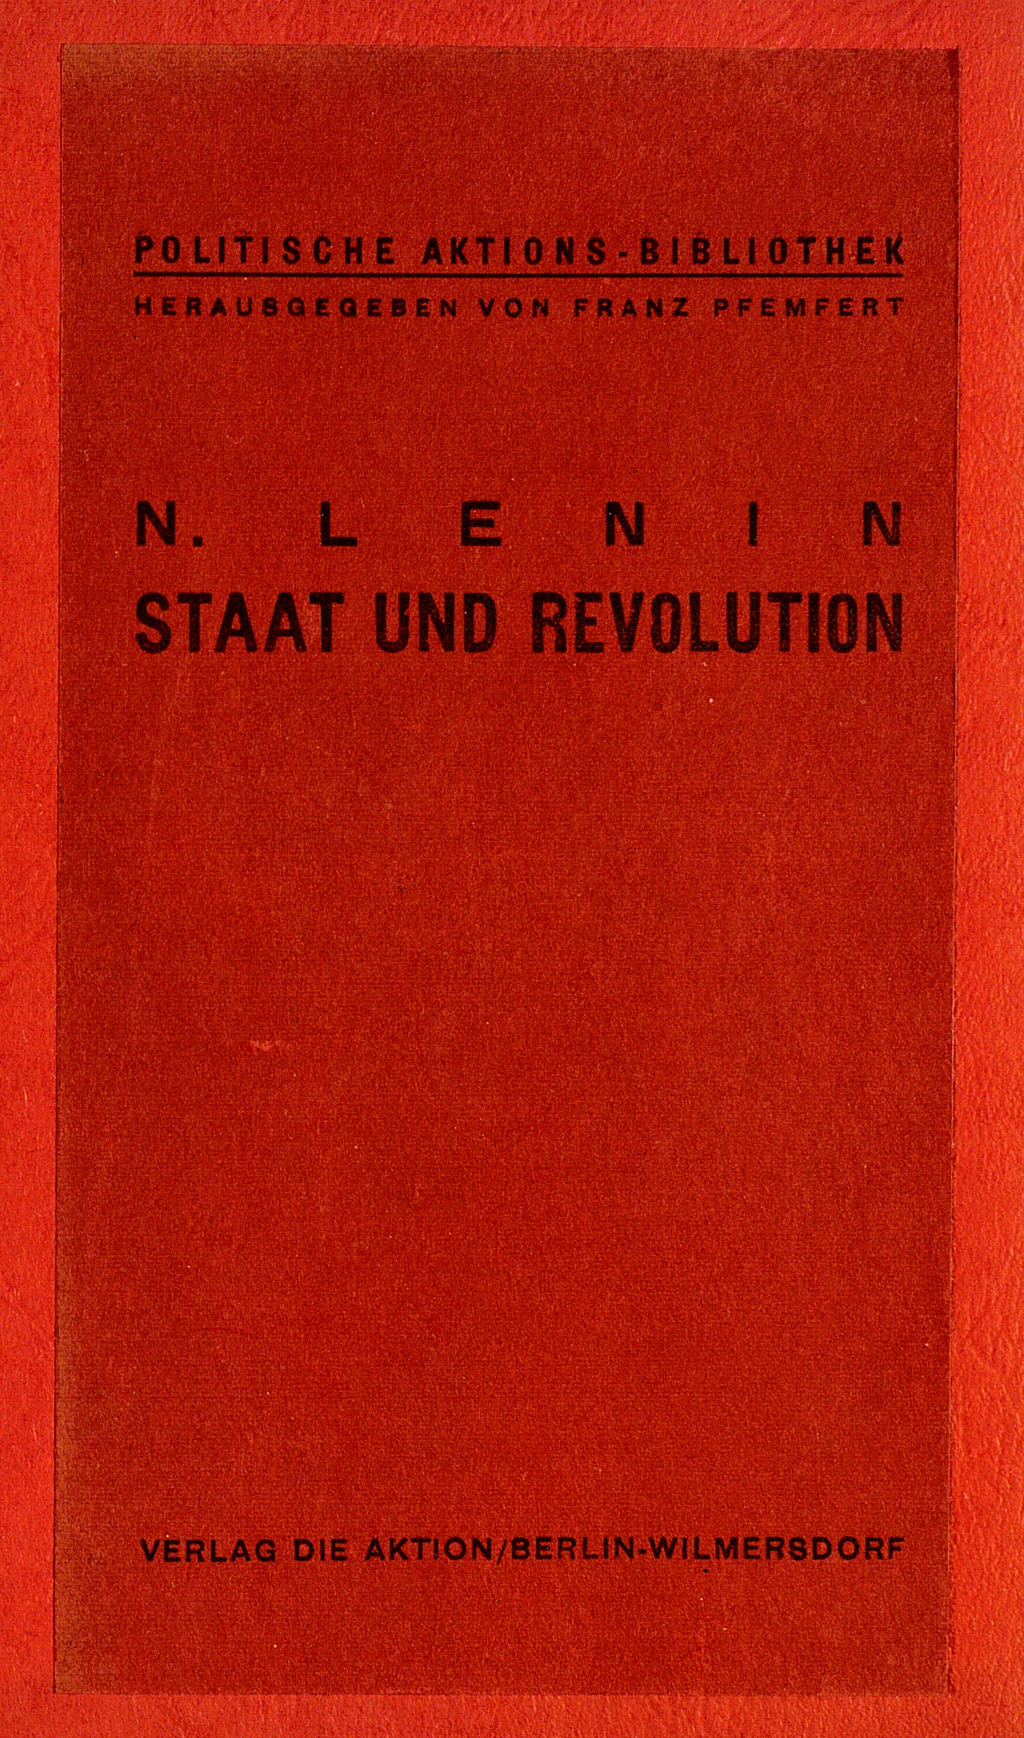 Zu sehen ist der vollkommen in Rot gehaltene Vorderumschlag der Veröffentlichung Lenins.